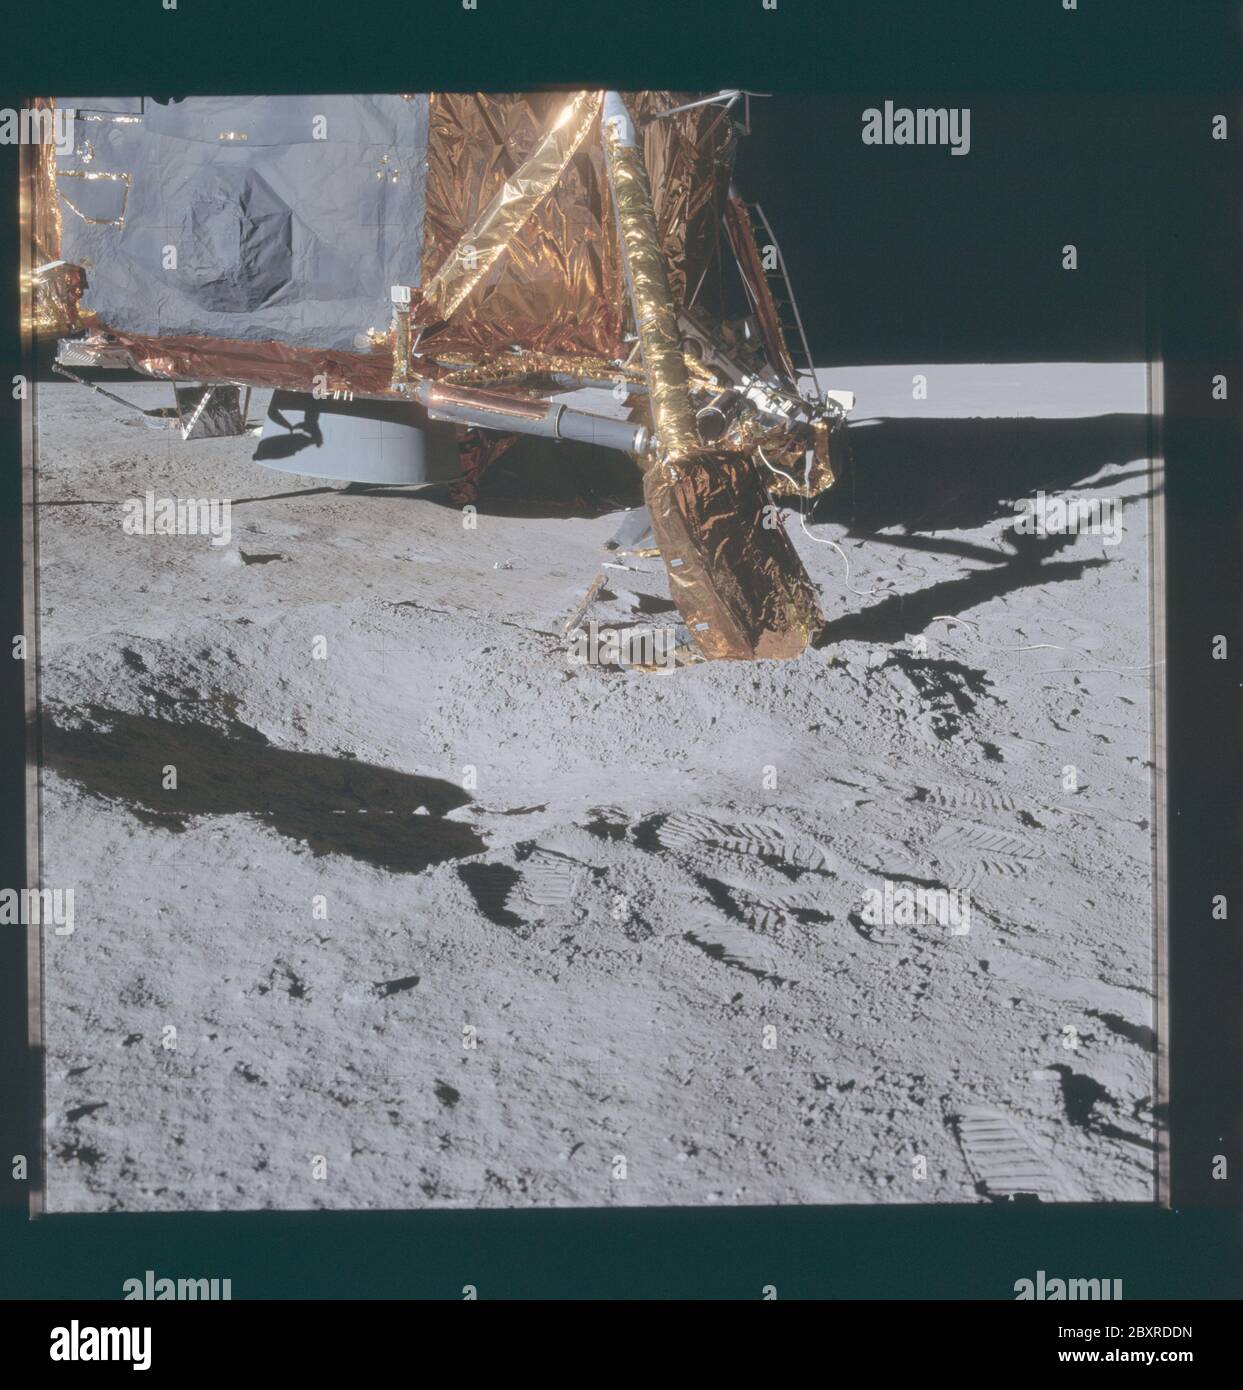 AS14-66-9258 - Apollo 14 - Apollo 14 Missionsbild - Ansicht des Mondlandemoduls nach Südwesten.; Umfang und Inhalt: Die Originaldatenbank beschreibt dies als: Beschreibung: Ansicht des Mondlandemoduls nach Südwesten. Ansicht ist die Position des =Y Fußbads, eingebettet in den Rand eines Kraters mit 2 Metern Durchmesser. Die Spur der Kontaktsonde an der Oberfläche erscheint etwas östlich von Süden. Die Bilder wurden während EVA 1 der Apollo 14 Mission aufgenommen. Original Film Magazin wurde mit II beschriftet, Film-Typ war S0168 (High Speed Color Reversal, Innen / Oberfläche), 60mm Objektiv mit einer Sonnenhöhe von 12 Grad. Betreff Ter Stockfoto